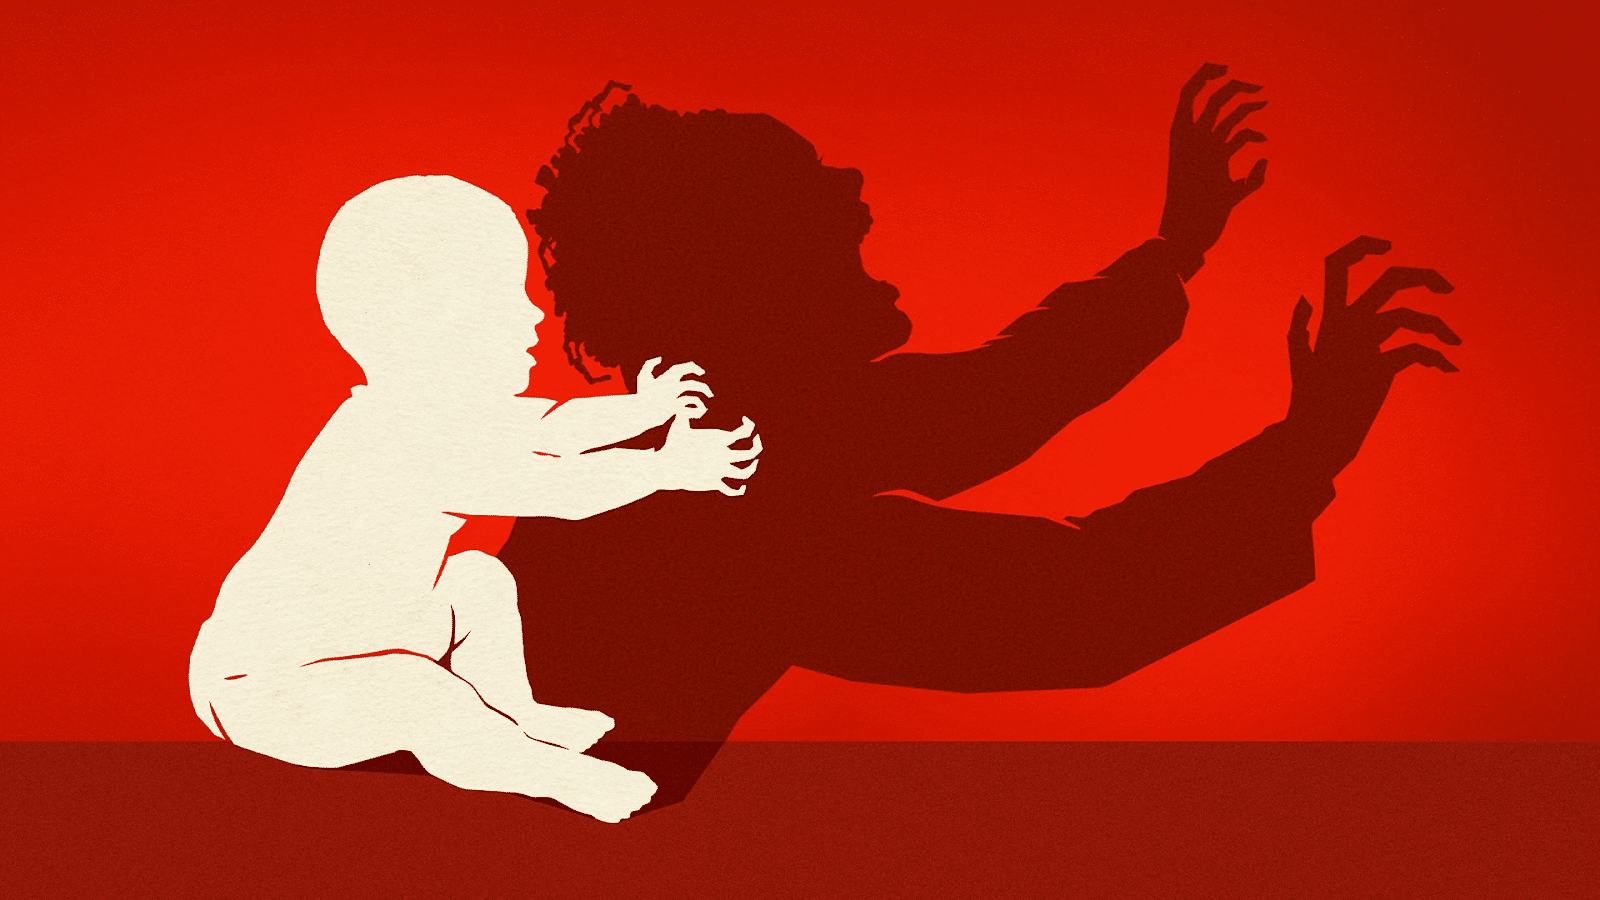 O bebê (The baby) mini série de comédia e terror da HBO MAX I Com e sem  spoiler 